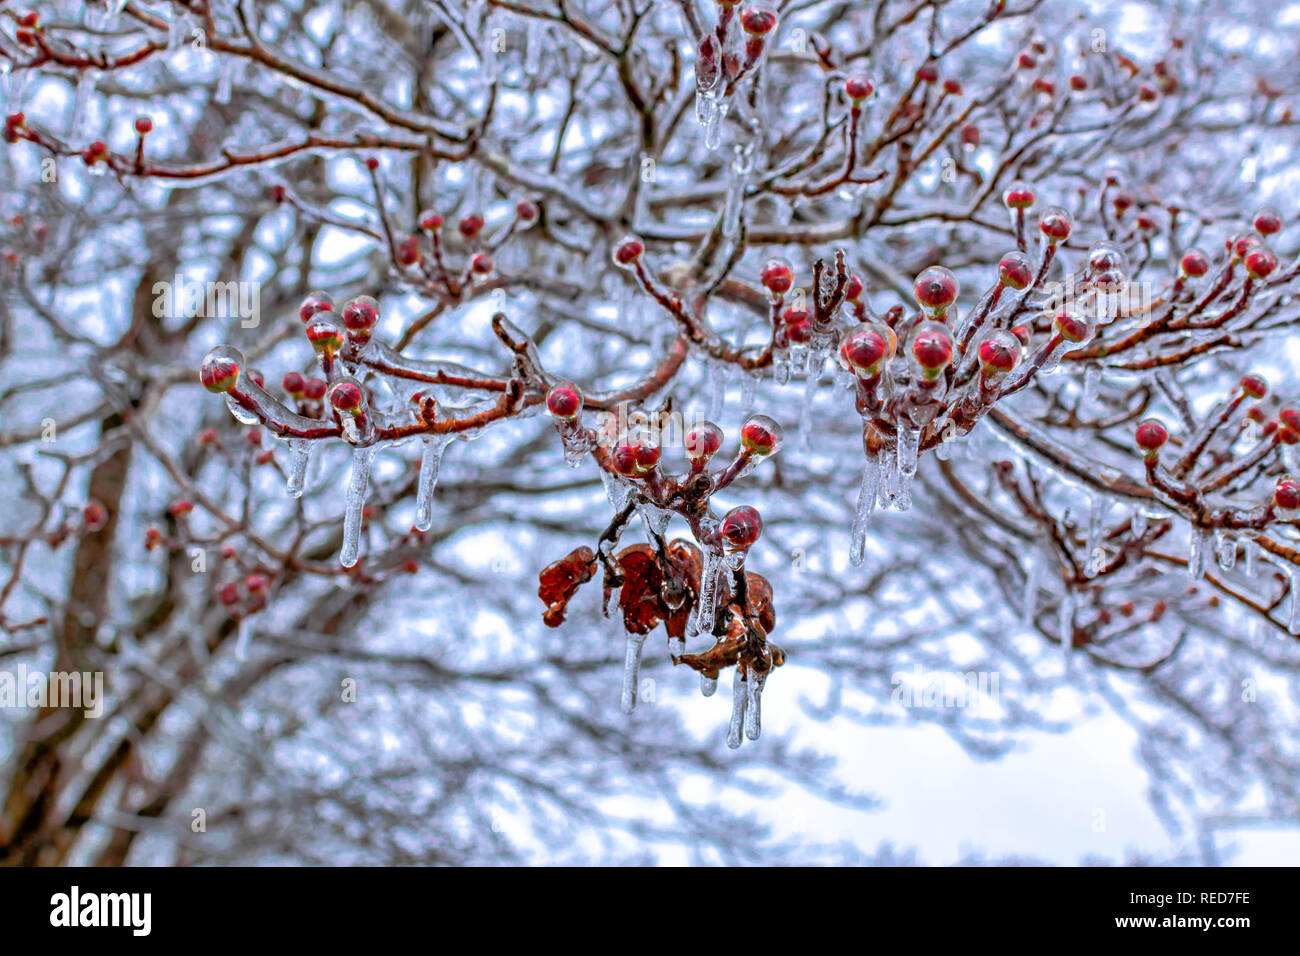 Scène d'hiver représente des branches d'arbre aux fruits rouges, recouverte de glace Banque D'Images